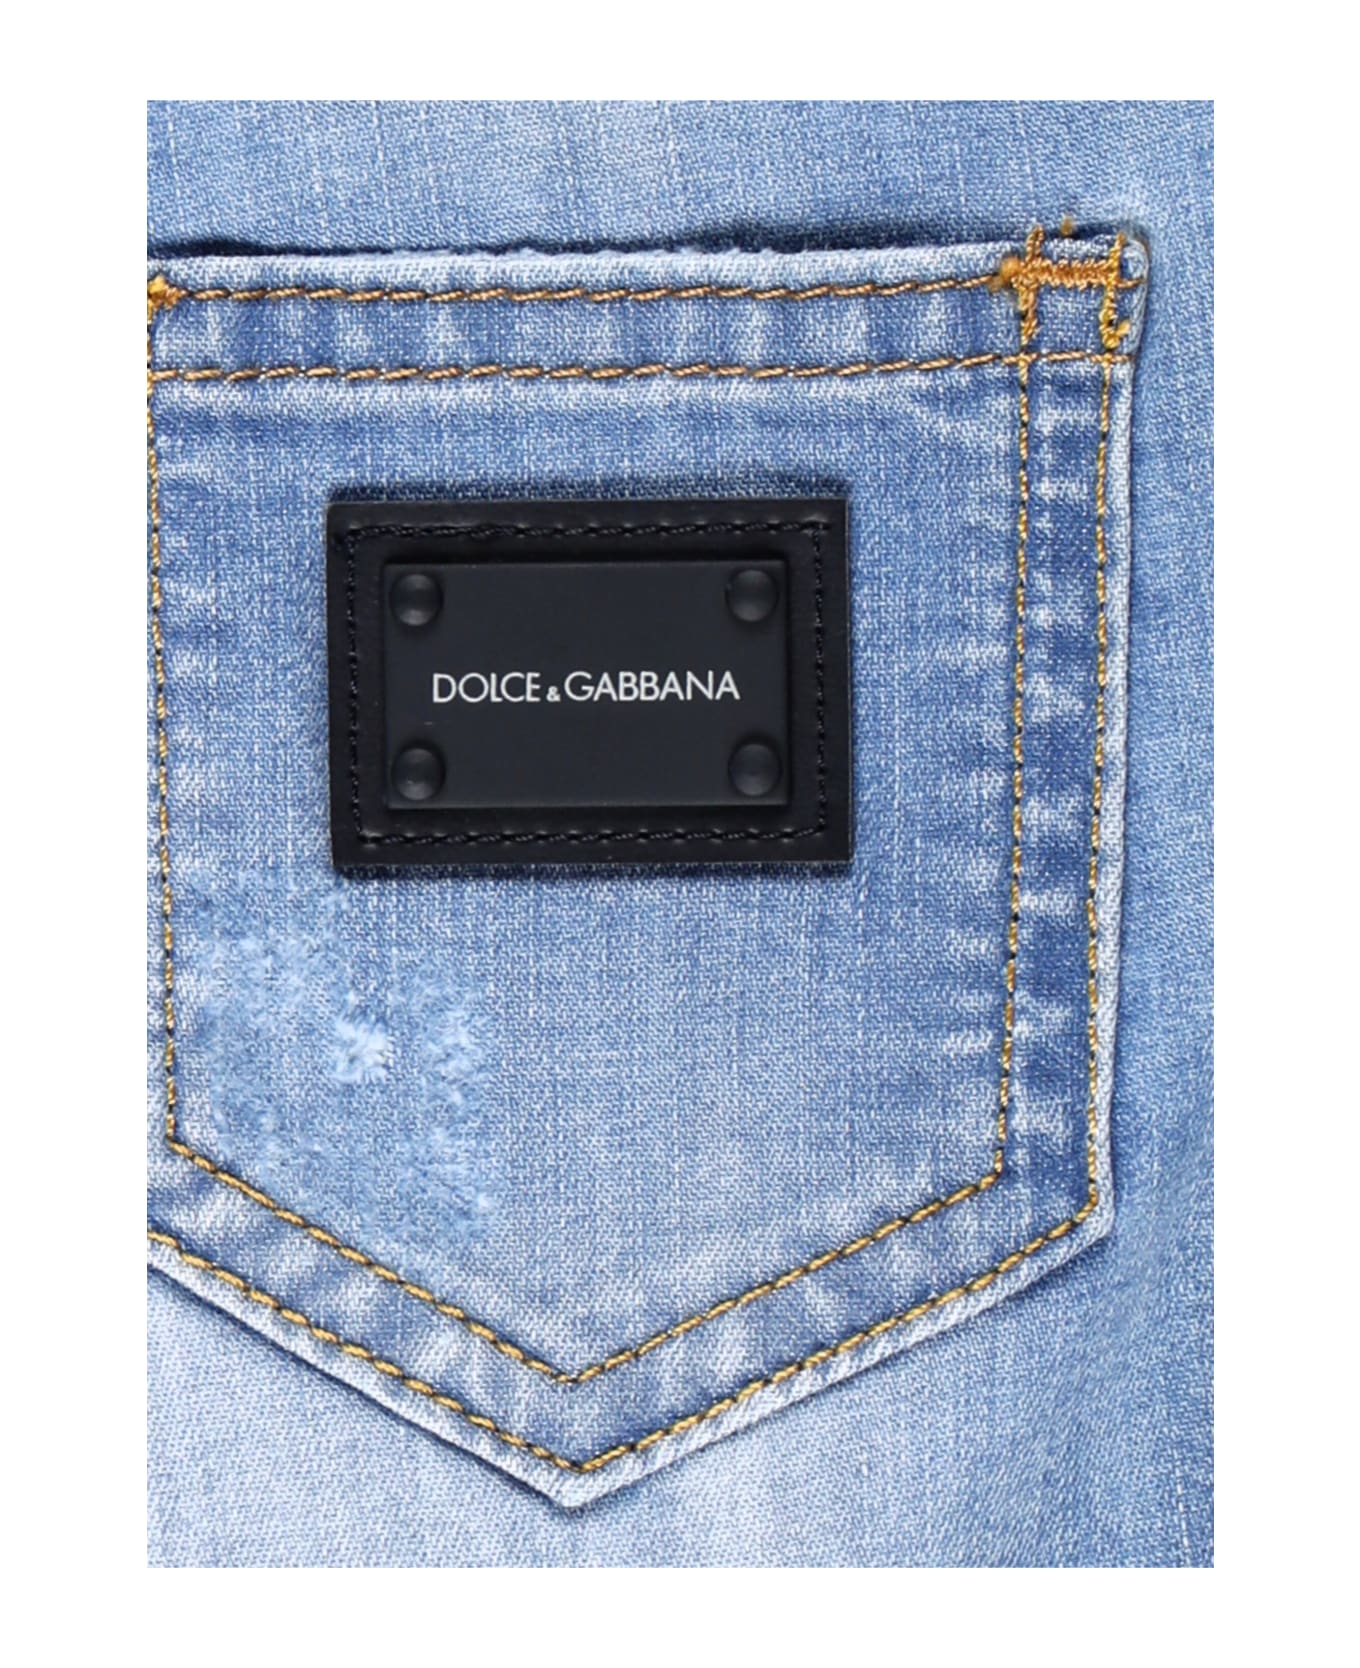 Dolce & Gabbana painted Short - CARTA DA ZUCCHERO